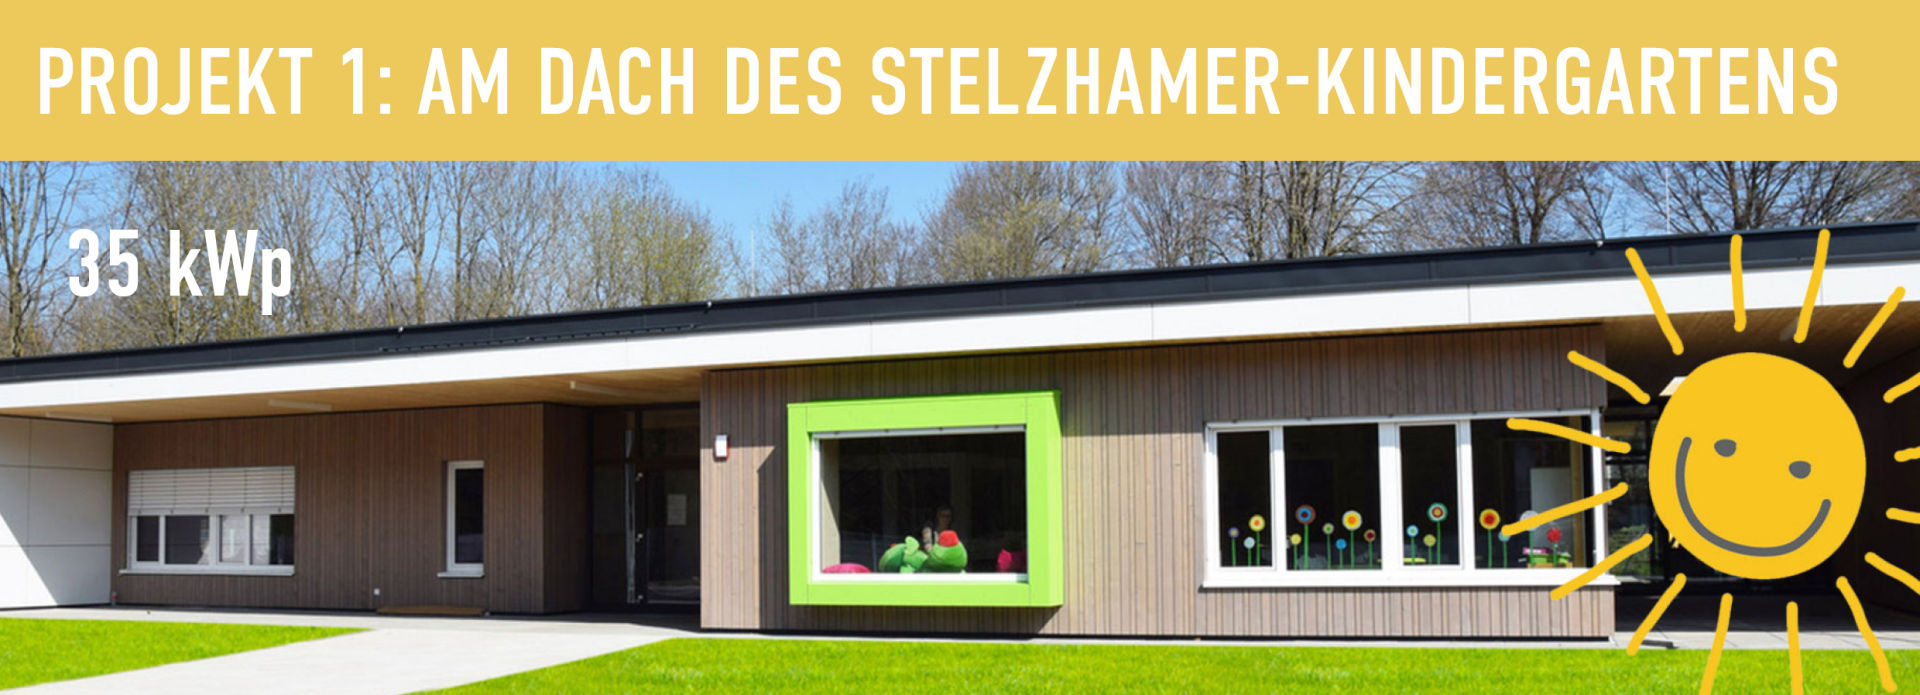 Projekt 1 Stelzhamer-Kindergarten